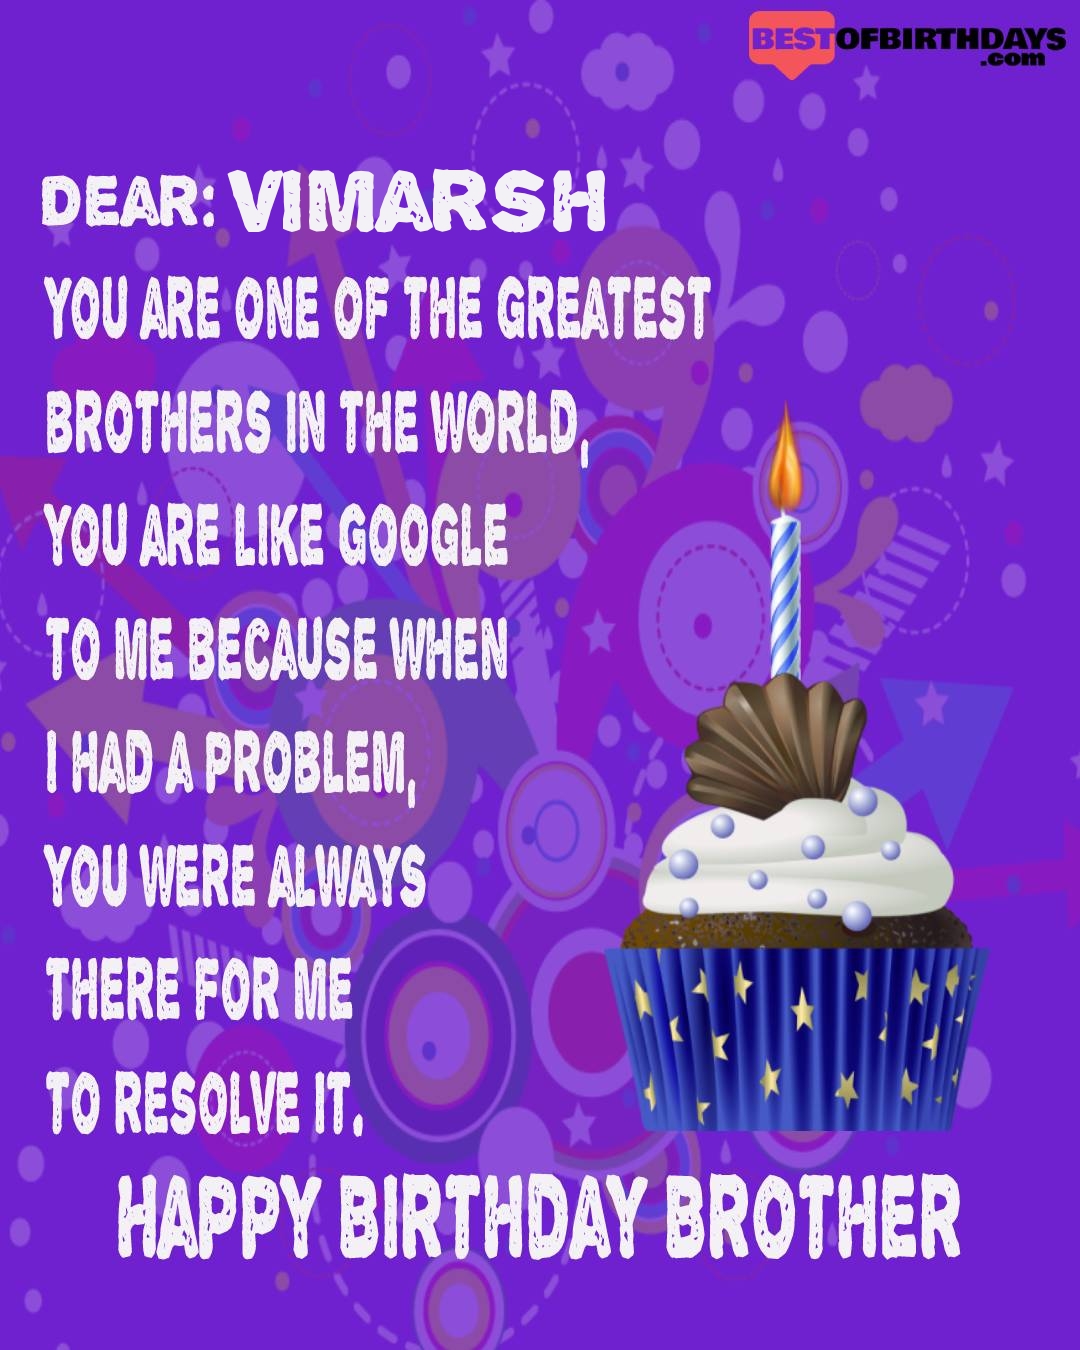 Happy birthday vimarsh bhai brother bro